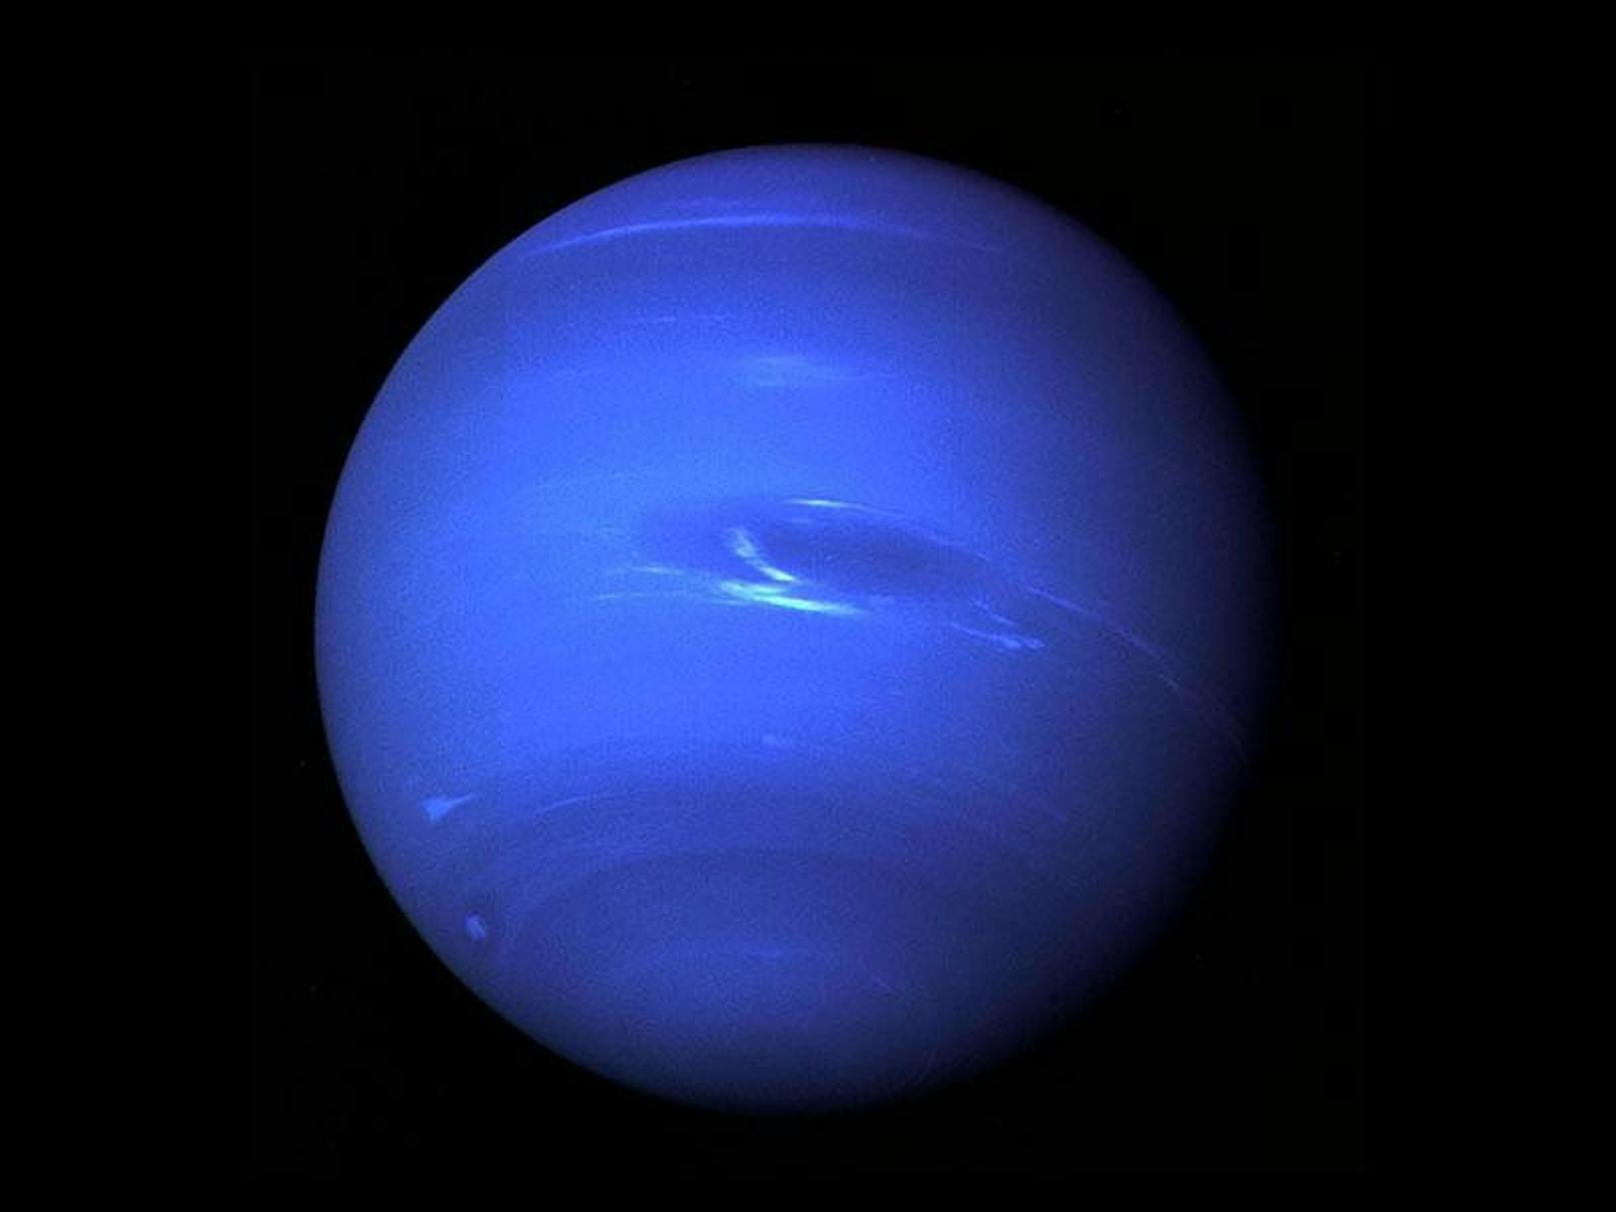 Denn bisher existiert der Himmelskörper jenseits von Neptun (Bild) nur auf Papier.